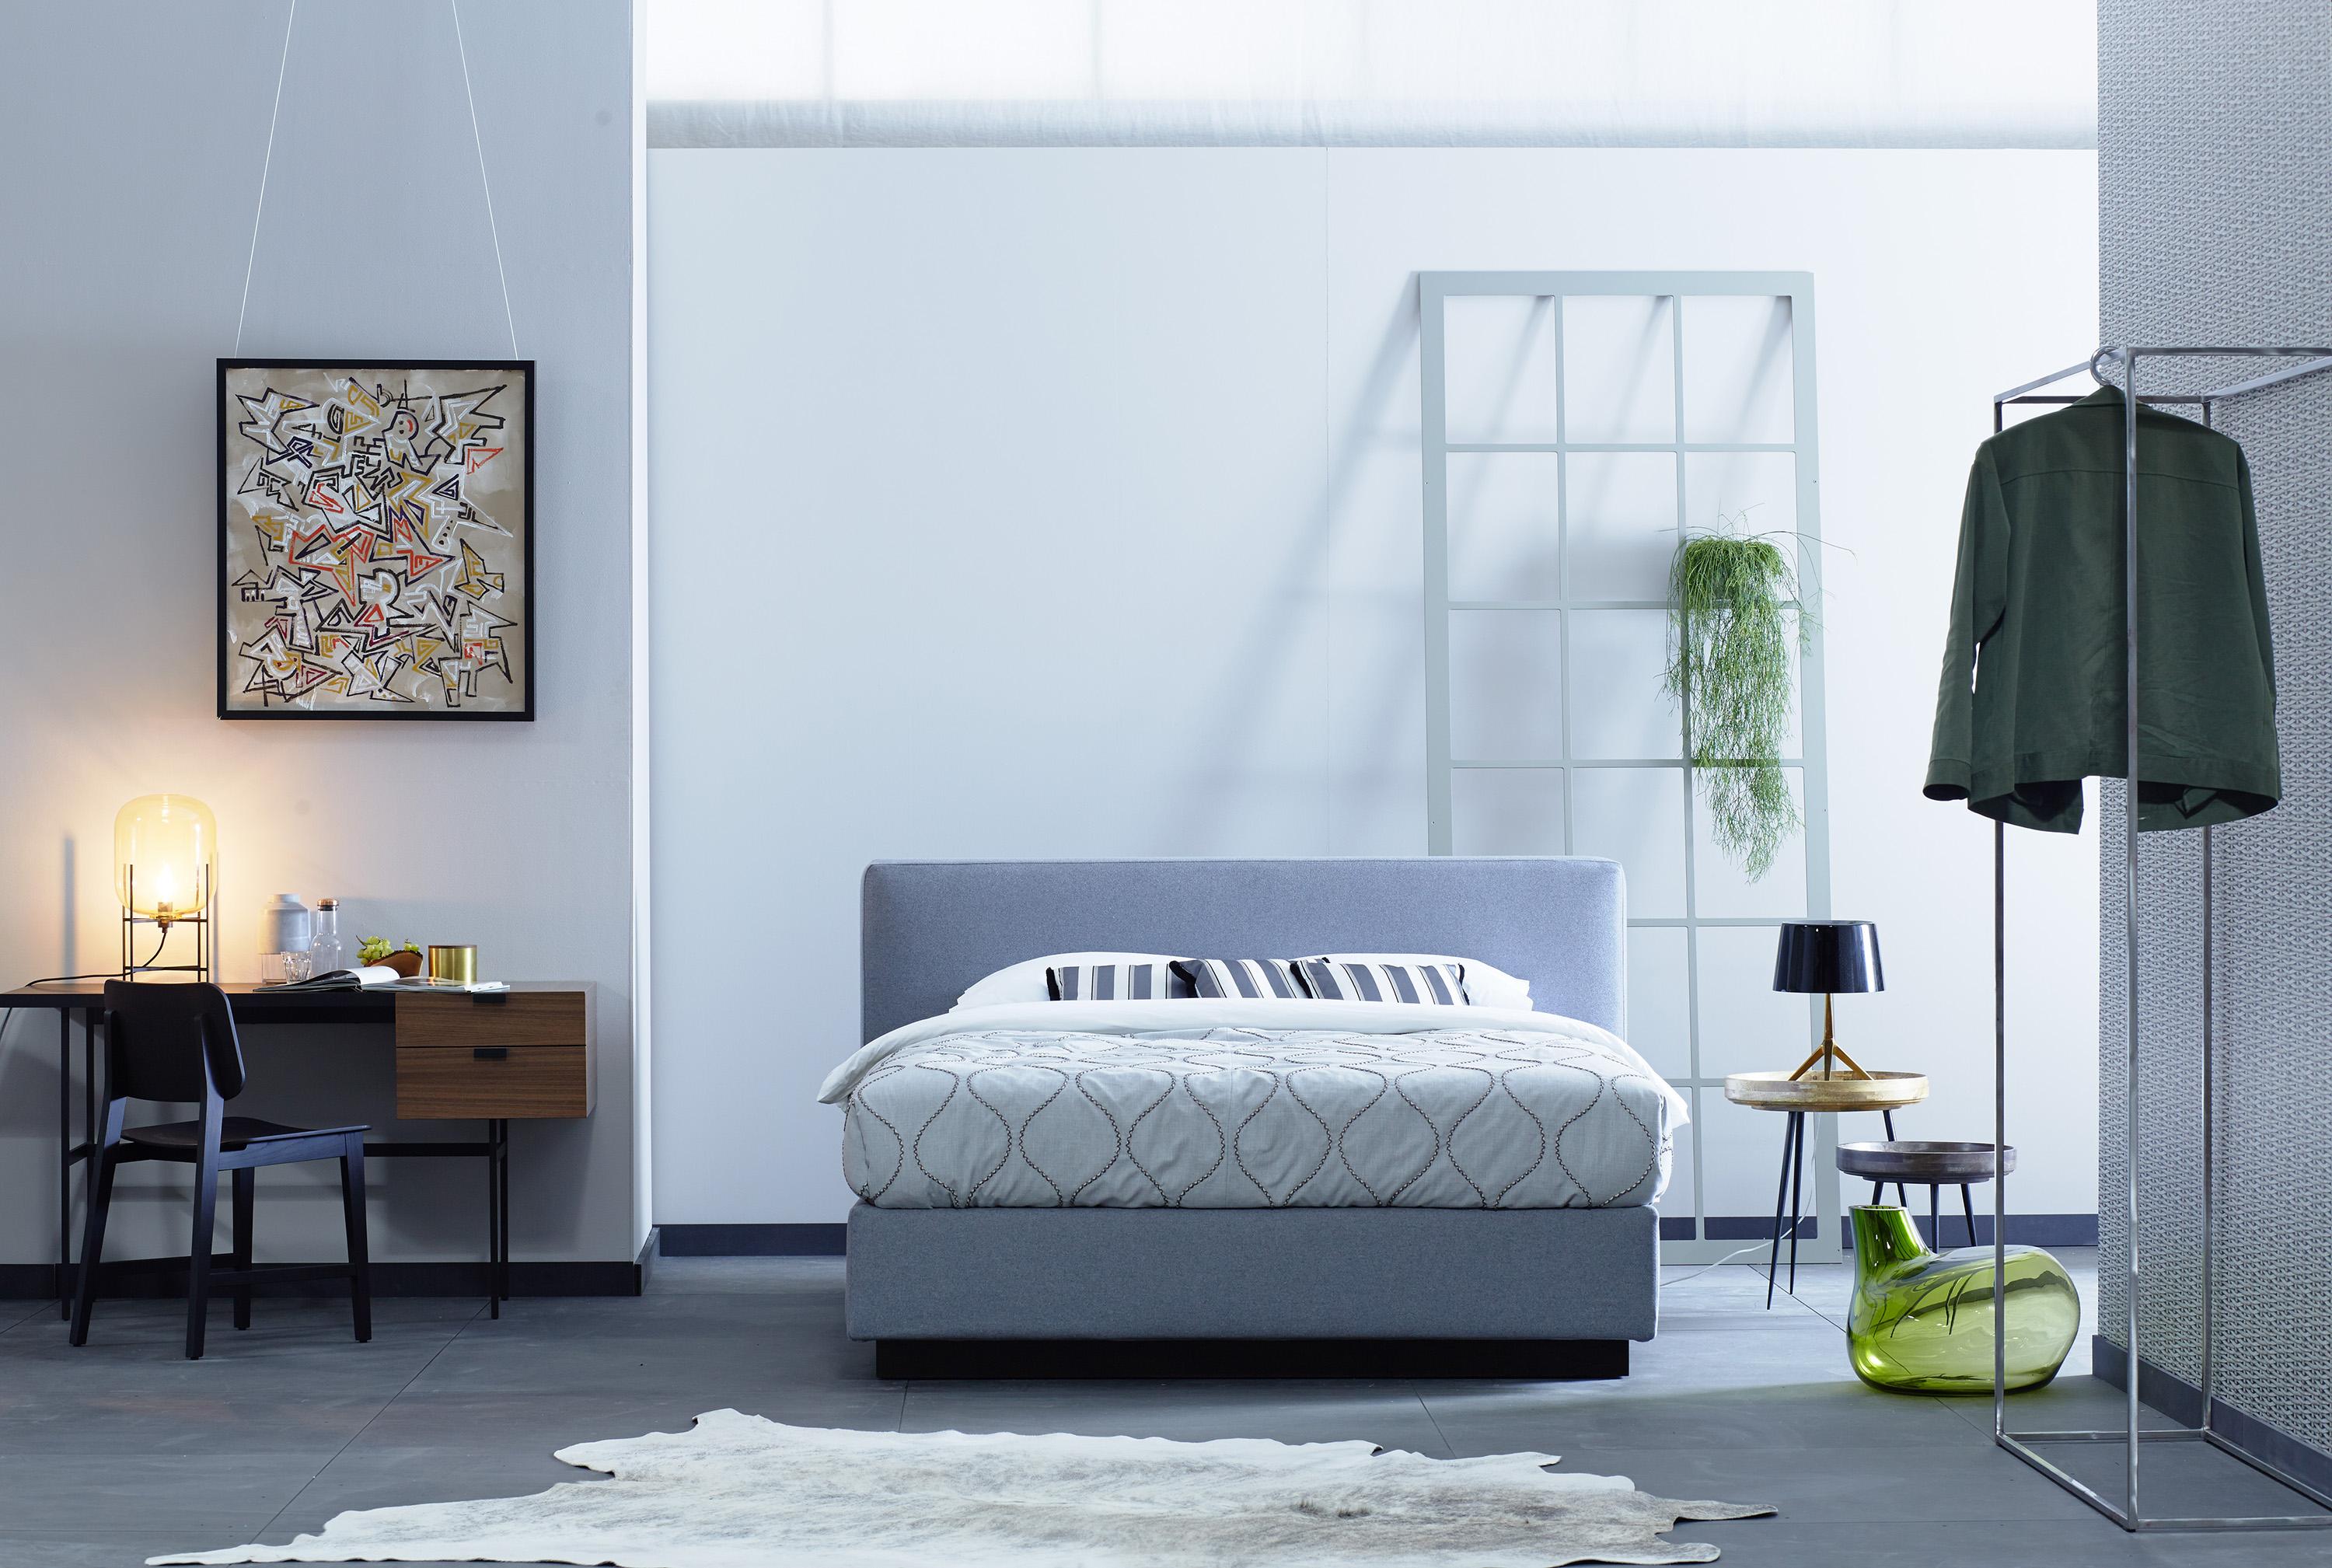 Schlafzimmer minimalistisch einrichten #kleiderstange #minimalistisch #boxspringbett #schlafzimmergestalten #zimmergestaltung ©Schramm